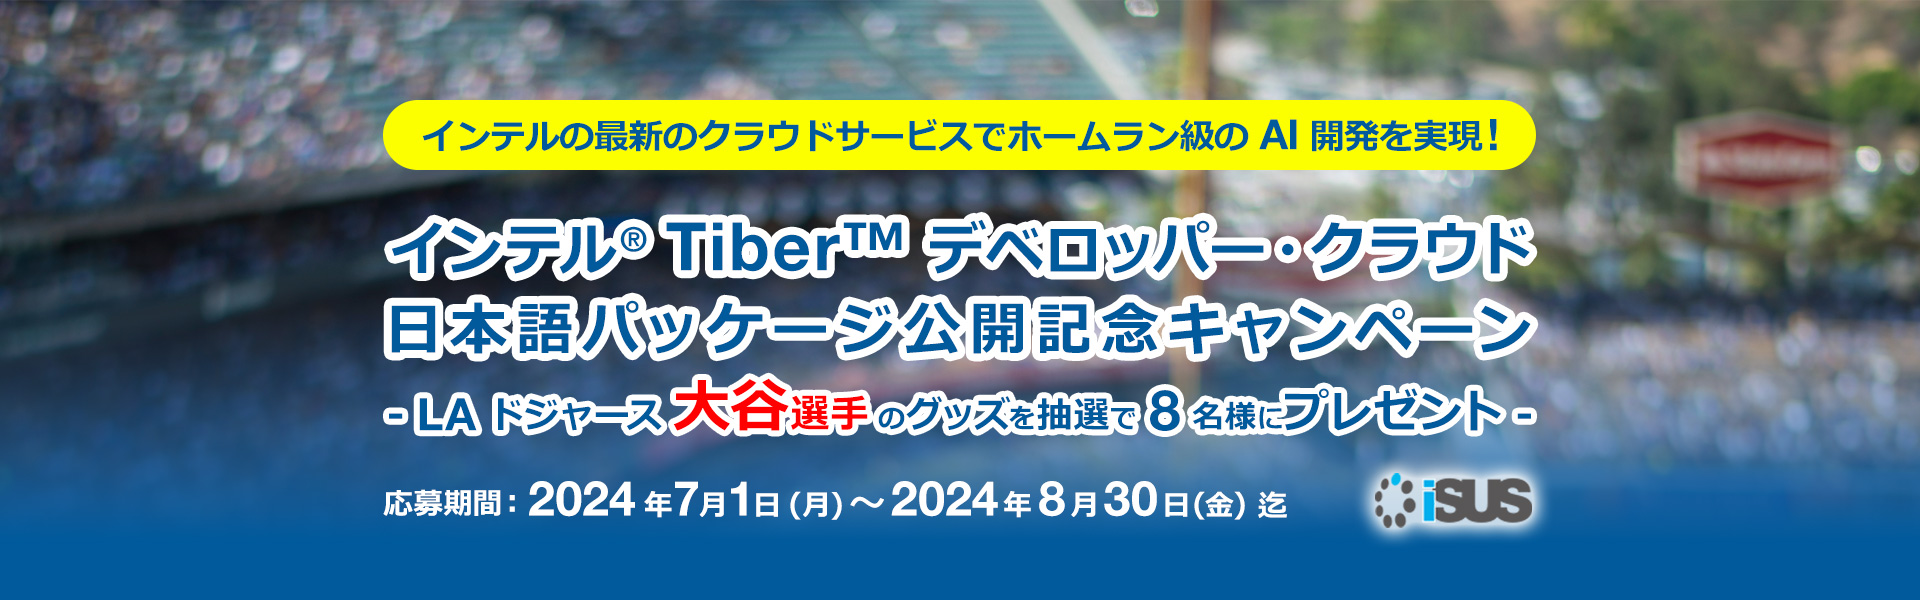 インテル Tiber デベロッパー・クラウド対応日本語パッケージ公開記念キャンペーン